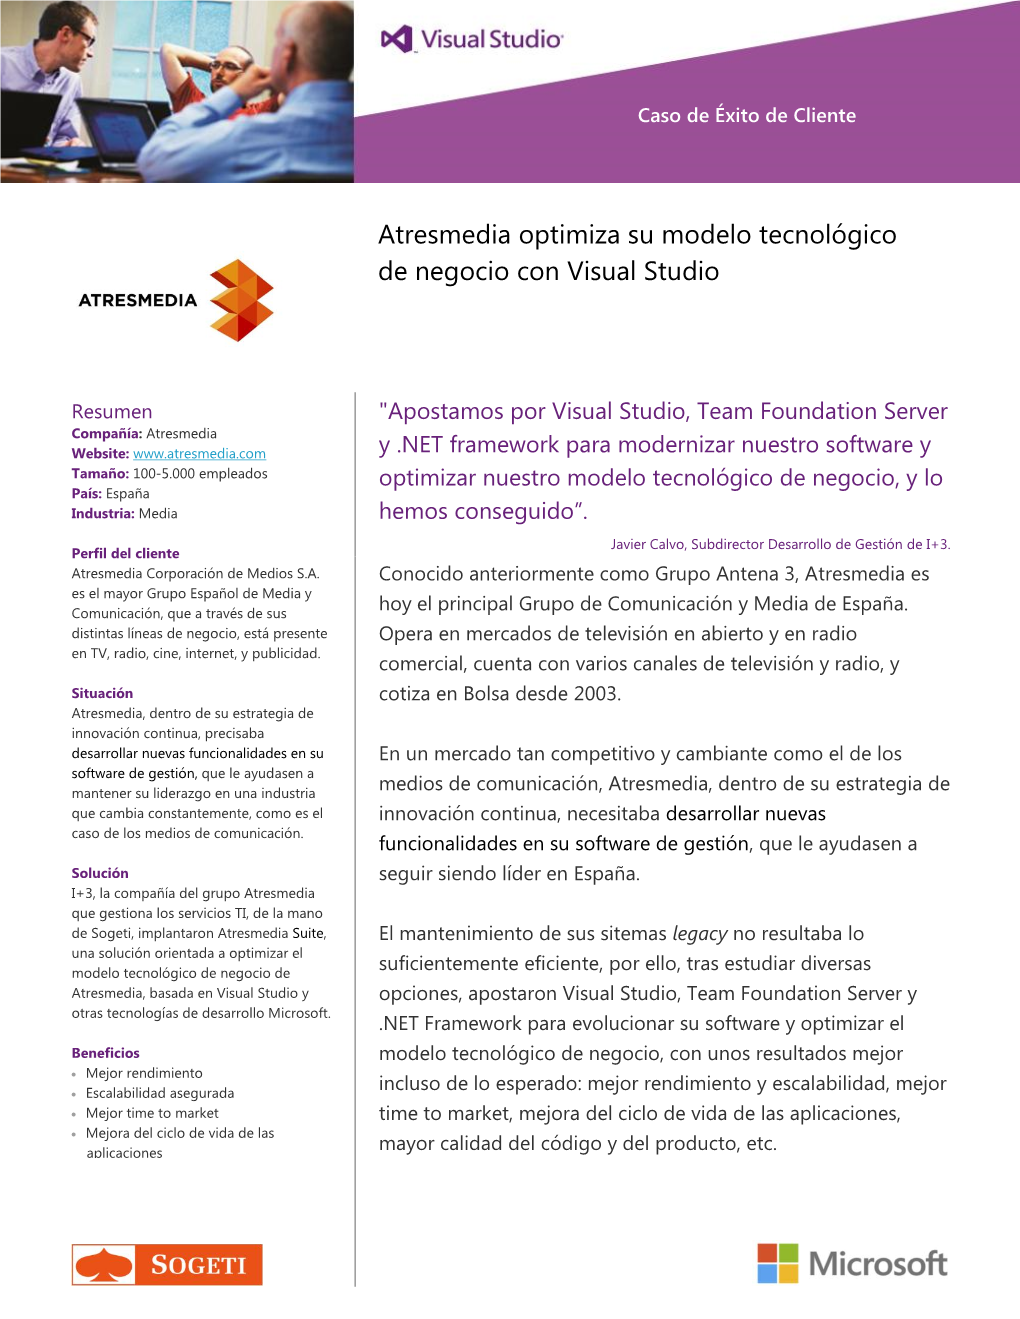 Atresmedia Optimiza Su Modelo Tecnológico De Negocio Con Visual Studio